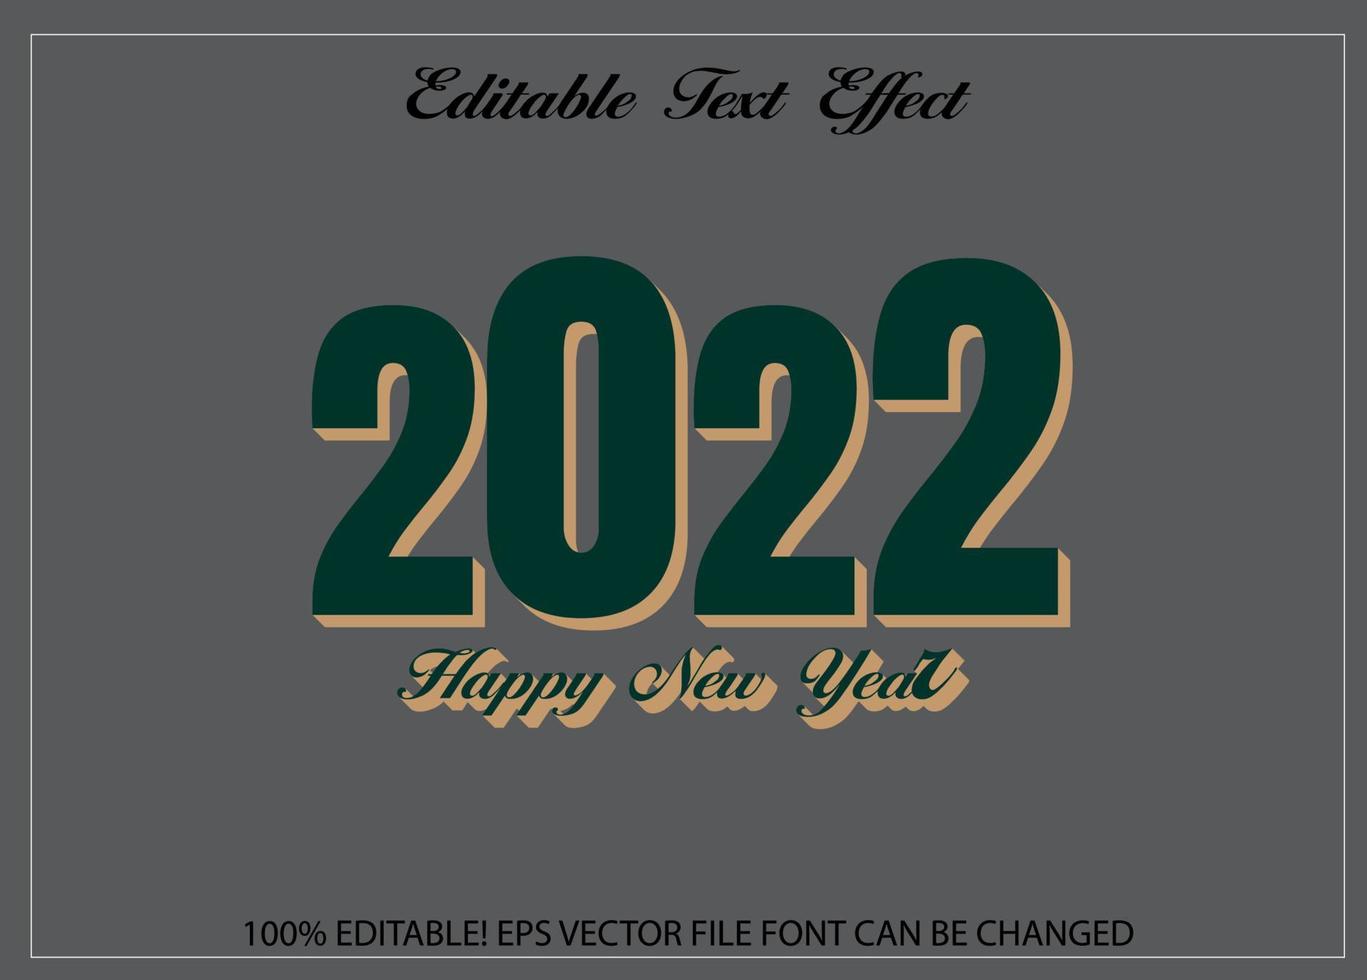 vecteur gratuit d'effet de texte modifiable bonne année 2022